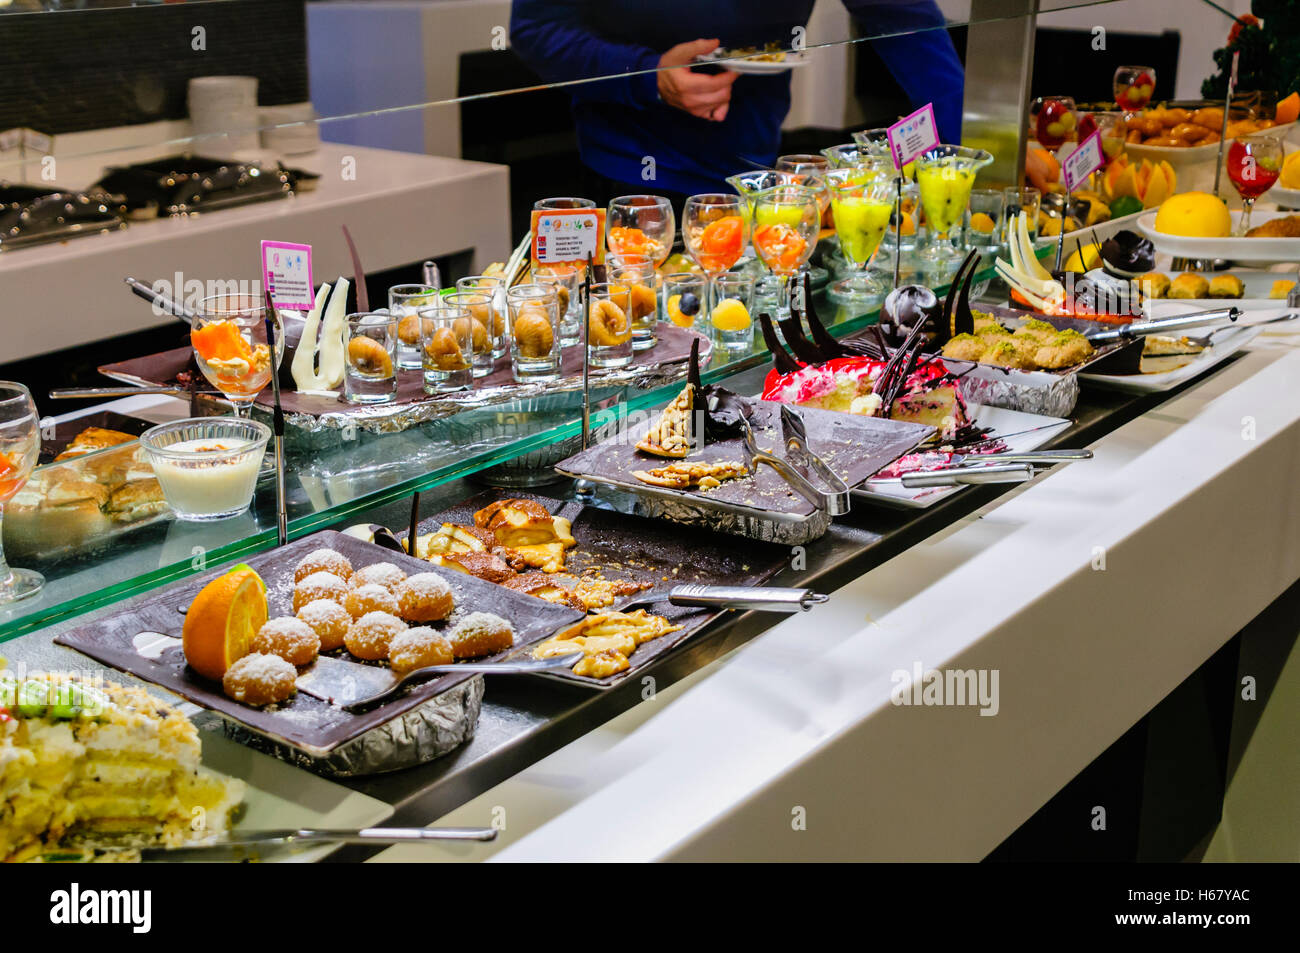 Dessets consistente di torte, mousse e frutta presso il buffet del ristorante dell'albergo Foto Stock